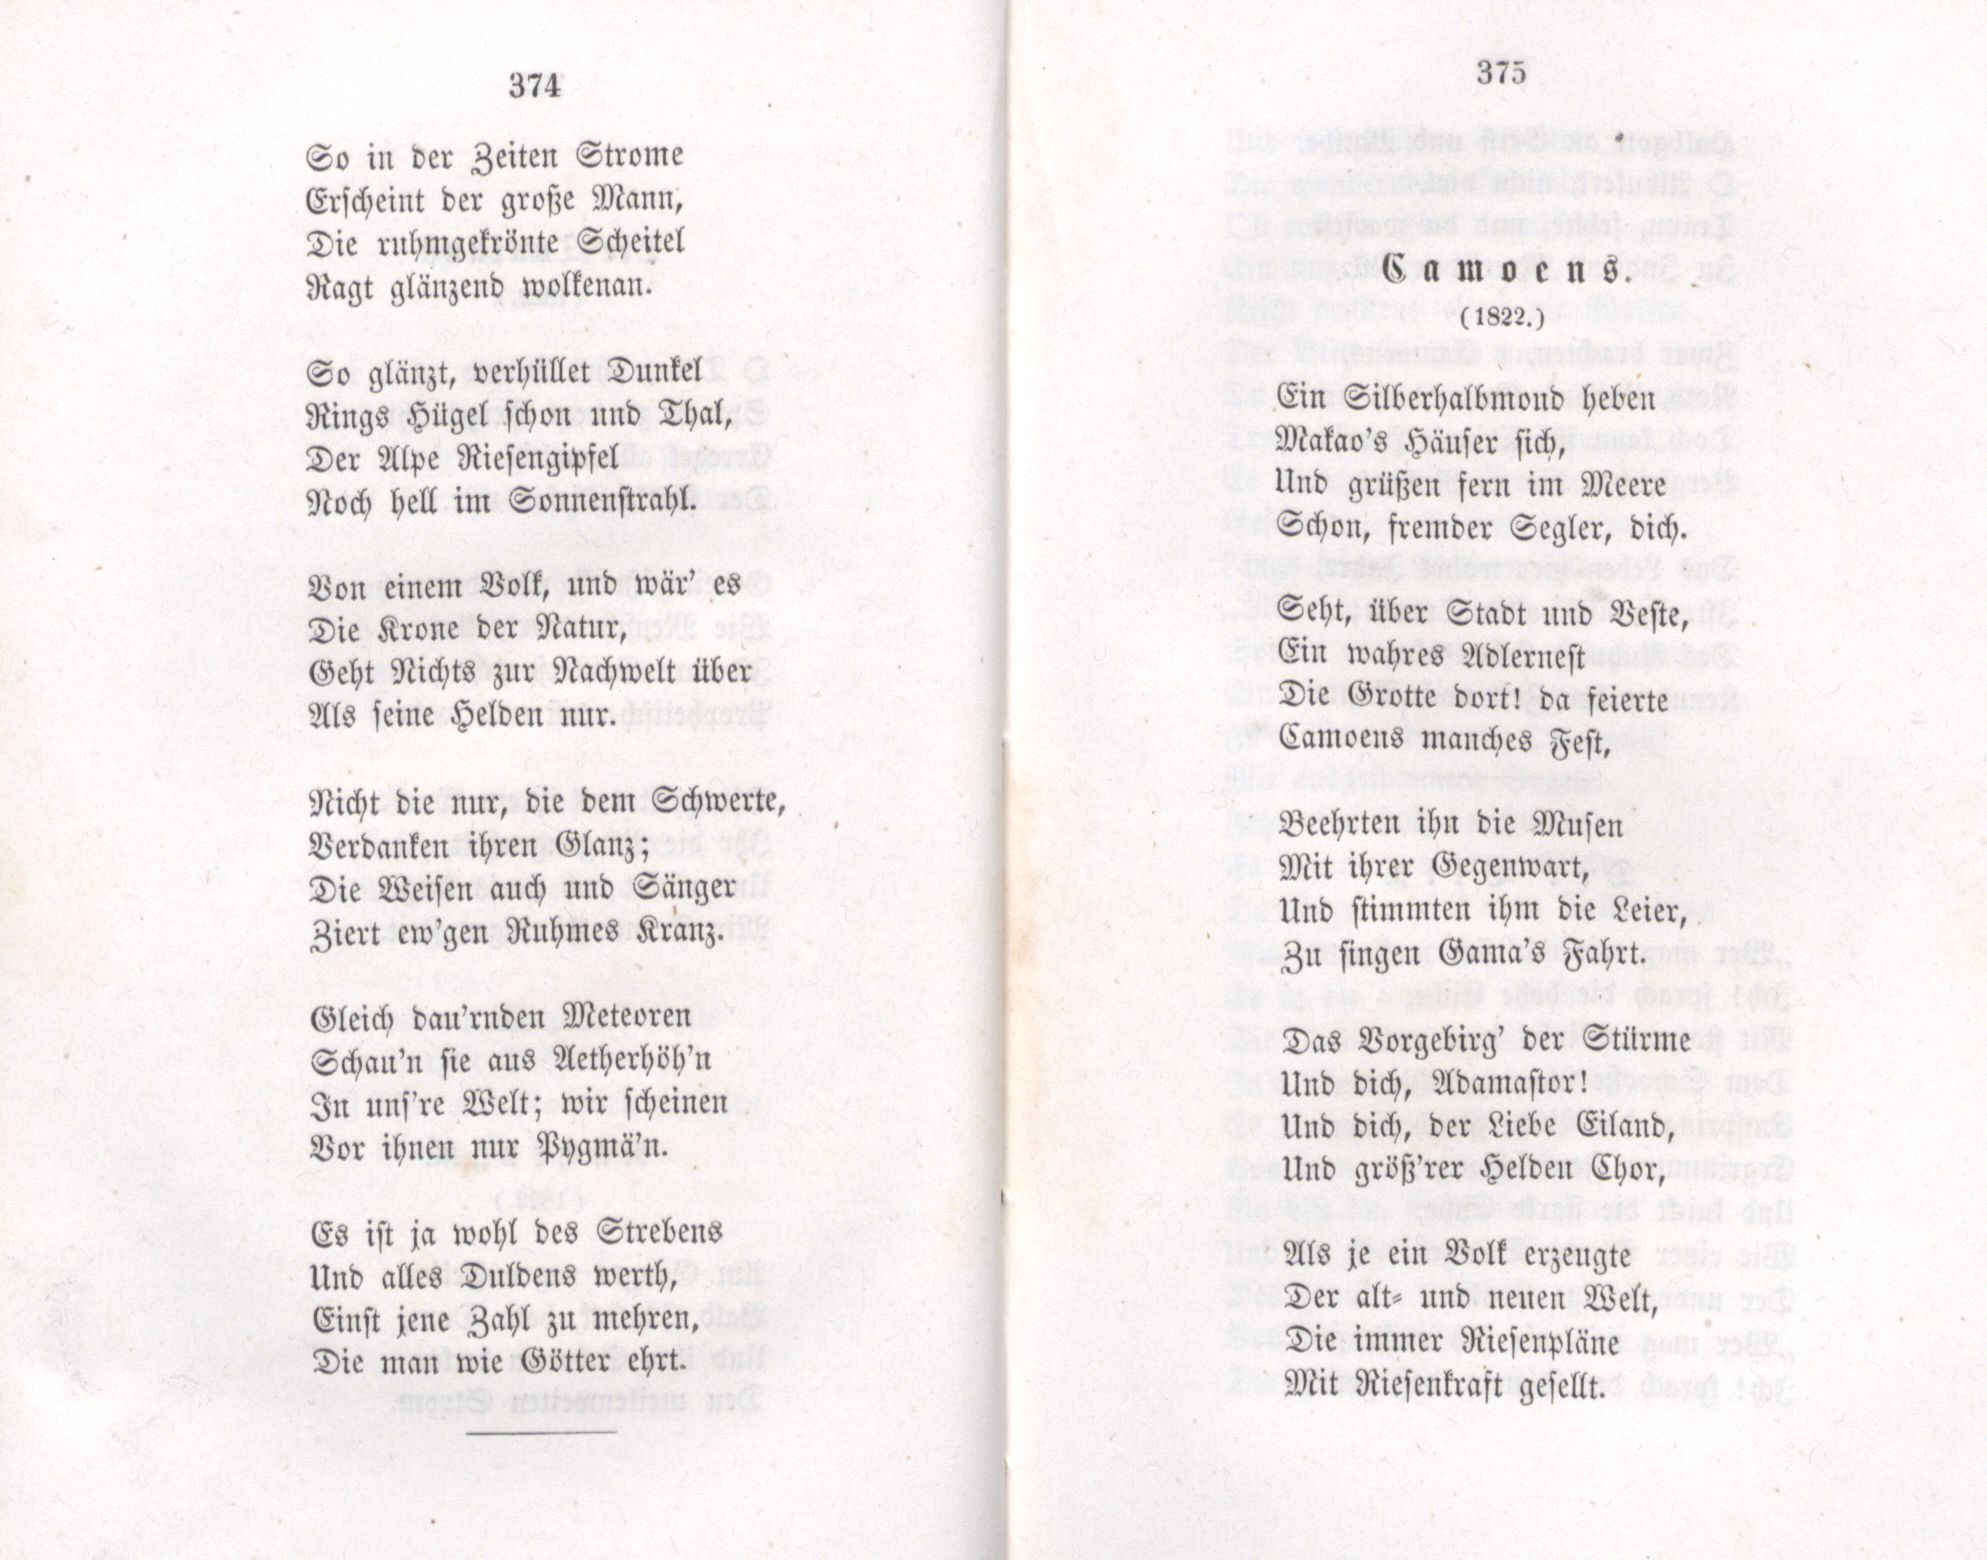 Camoens (1855) | 1. (374-375) Основной текст